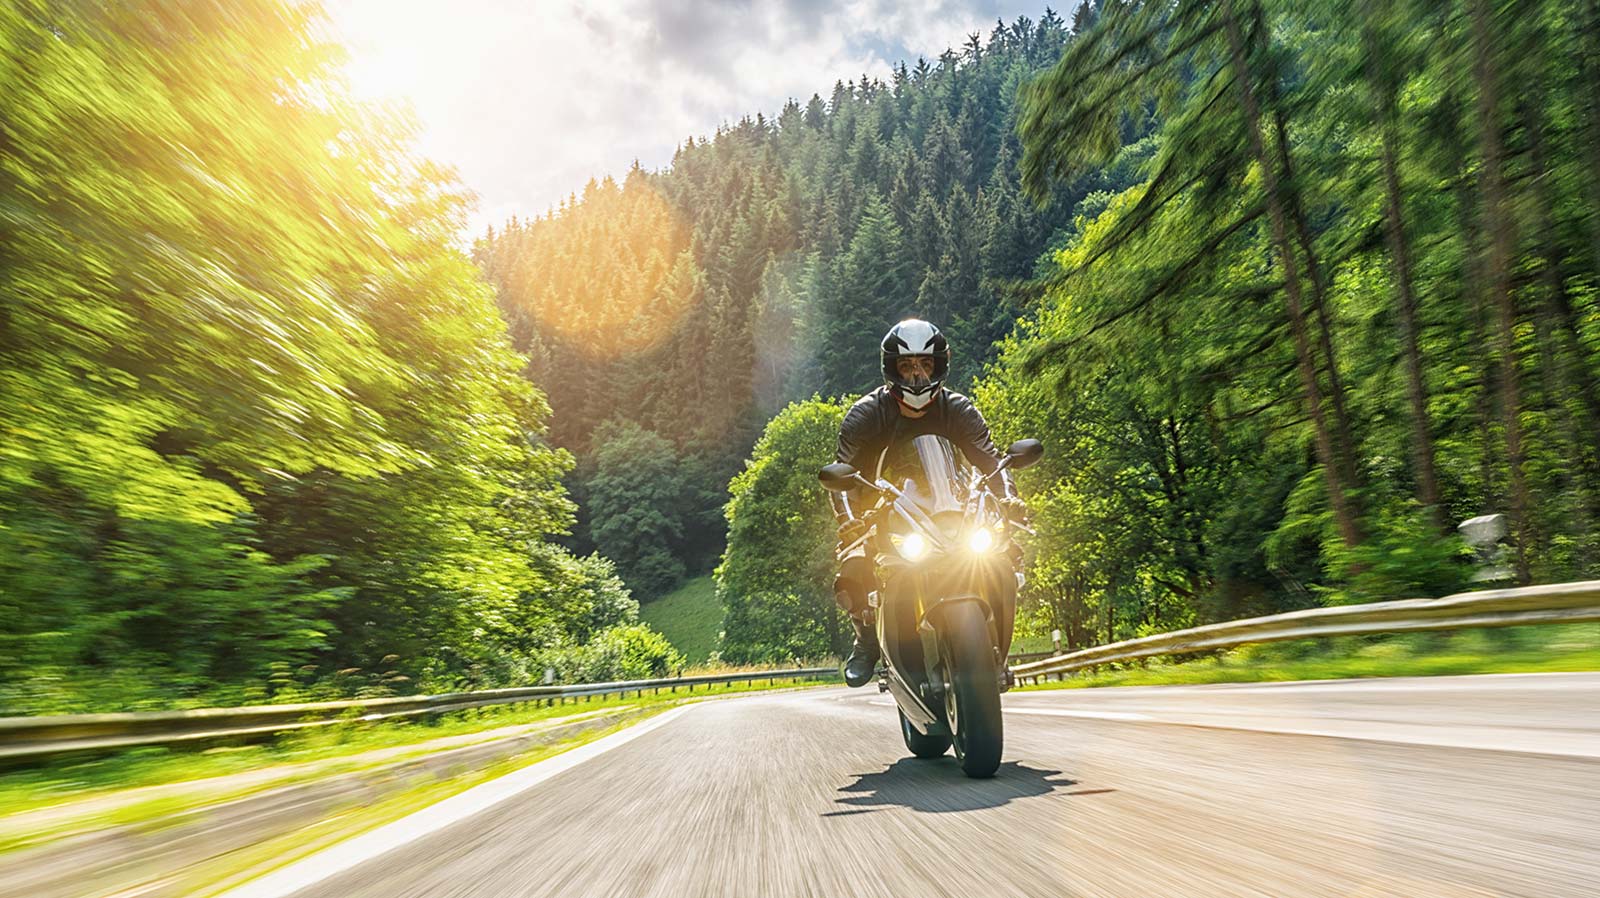 Las ventajas de alquilar una moto en tus viajes turísticos en lugar de usar otros medios de transporte